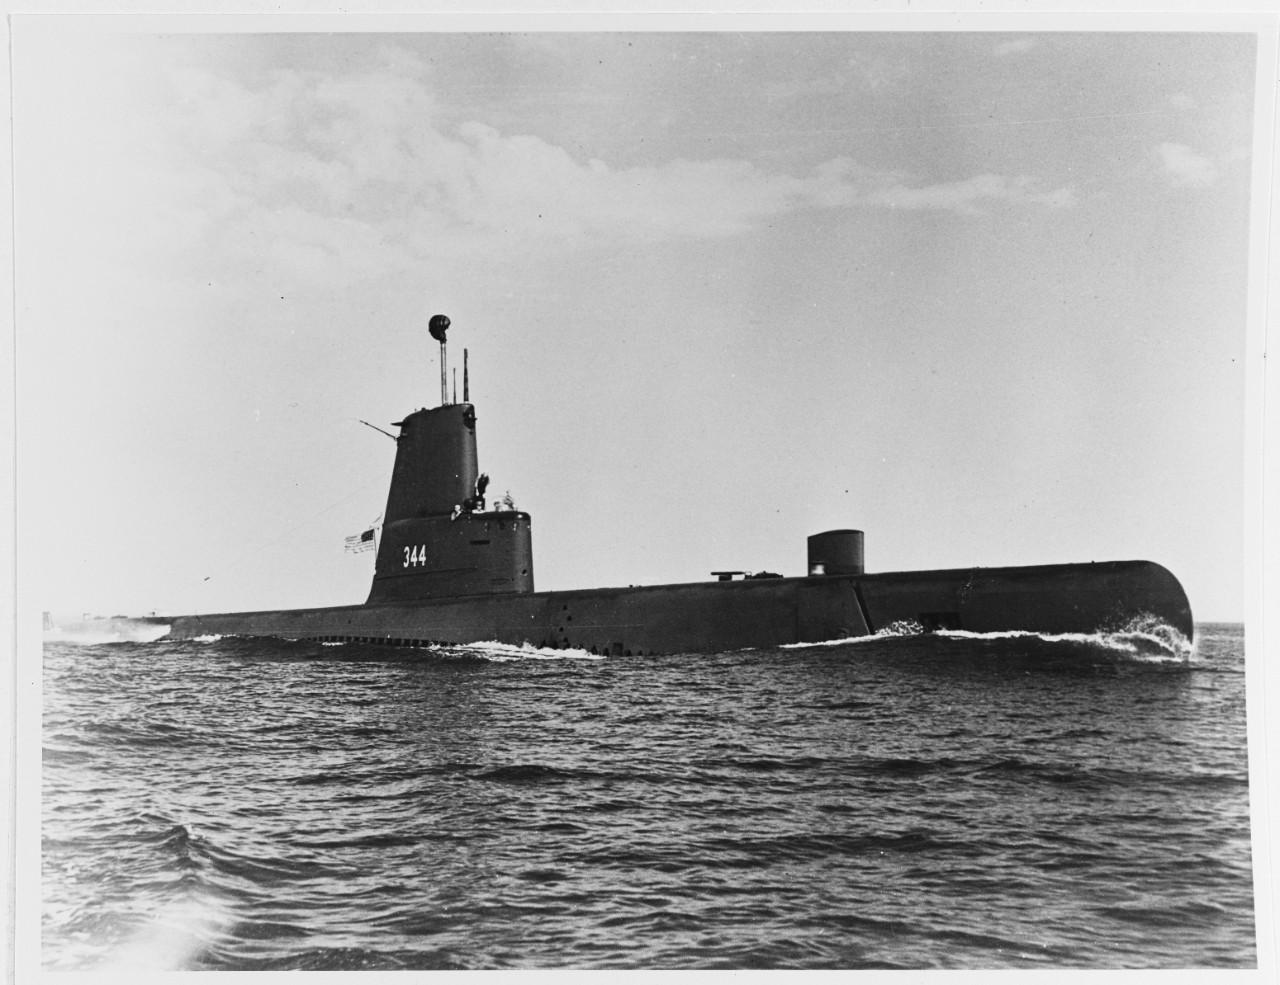 USS COBBLER (SS-344)